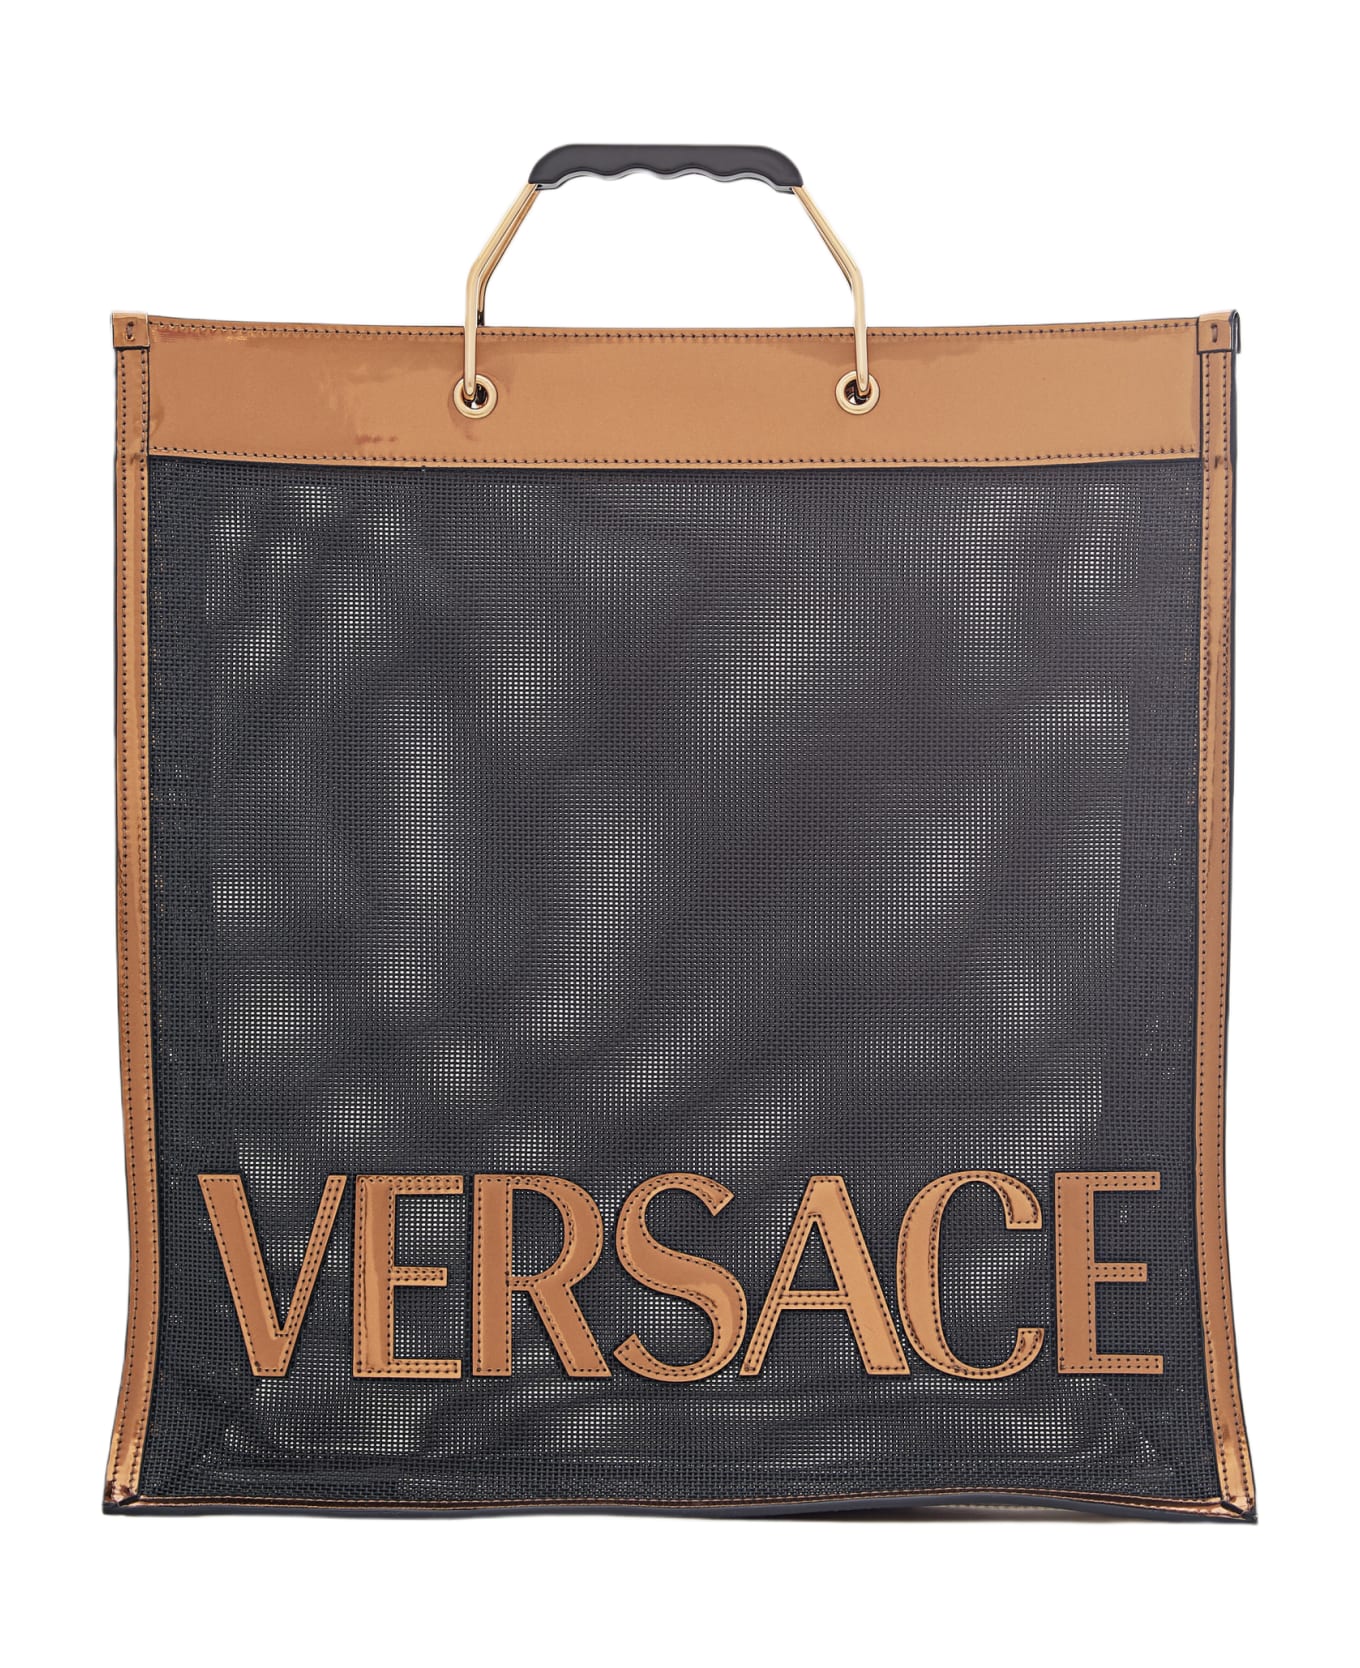 Versace Tote Bags Laminate - Black